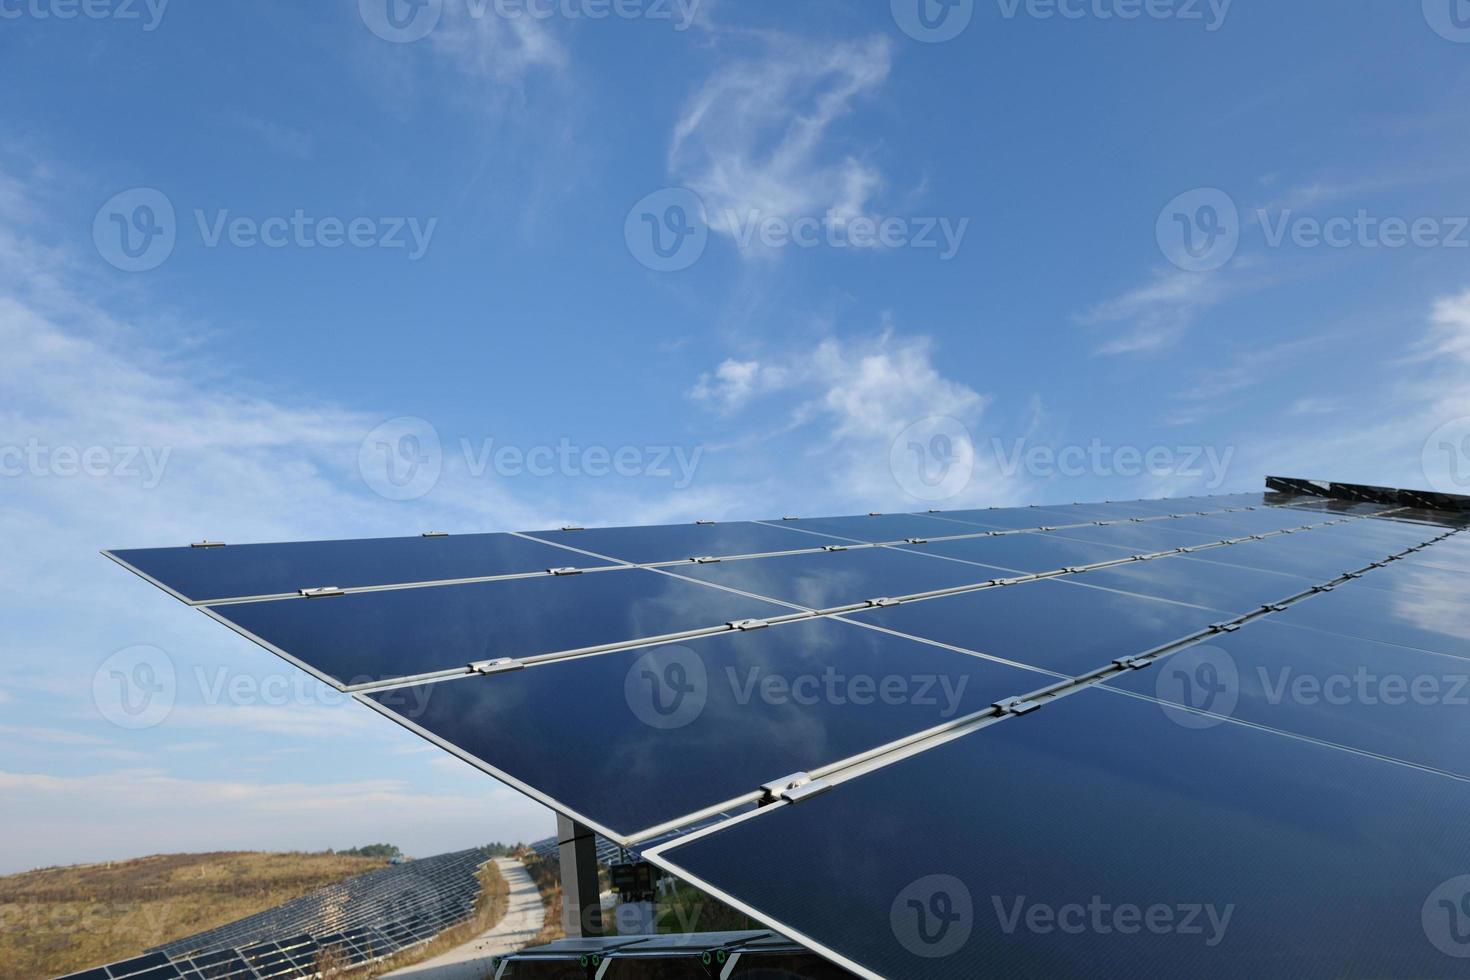 solar panel renewable energy field photo